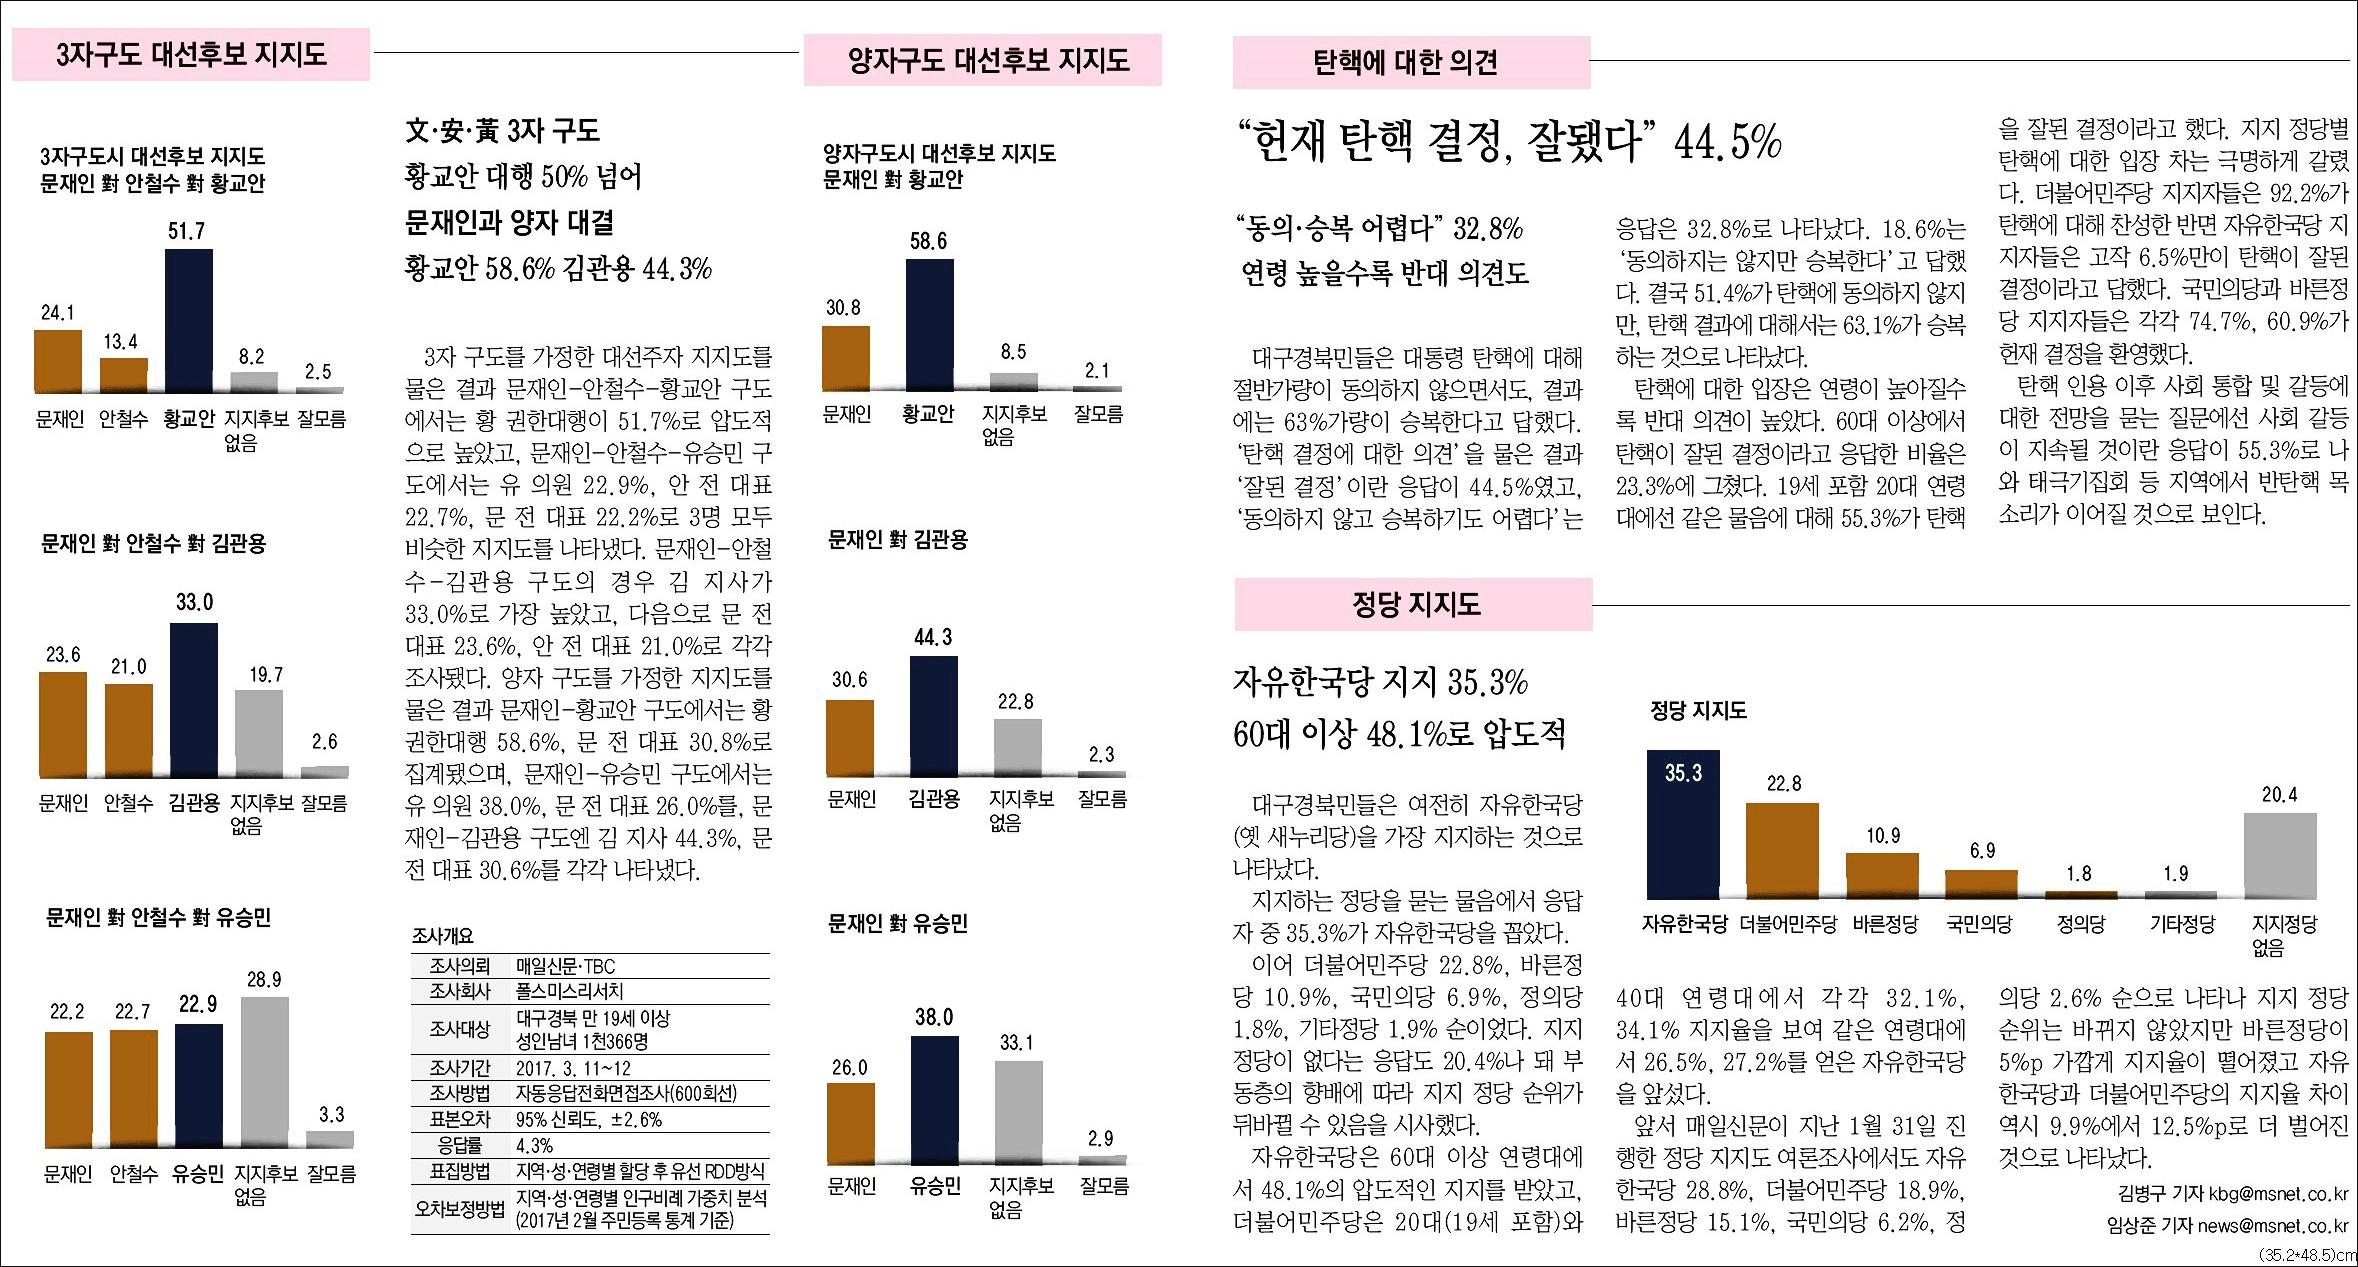 <매일신문> 2017년 3월 13일자 3면(종합)